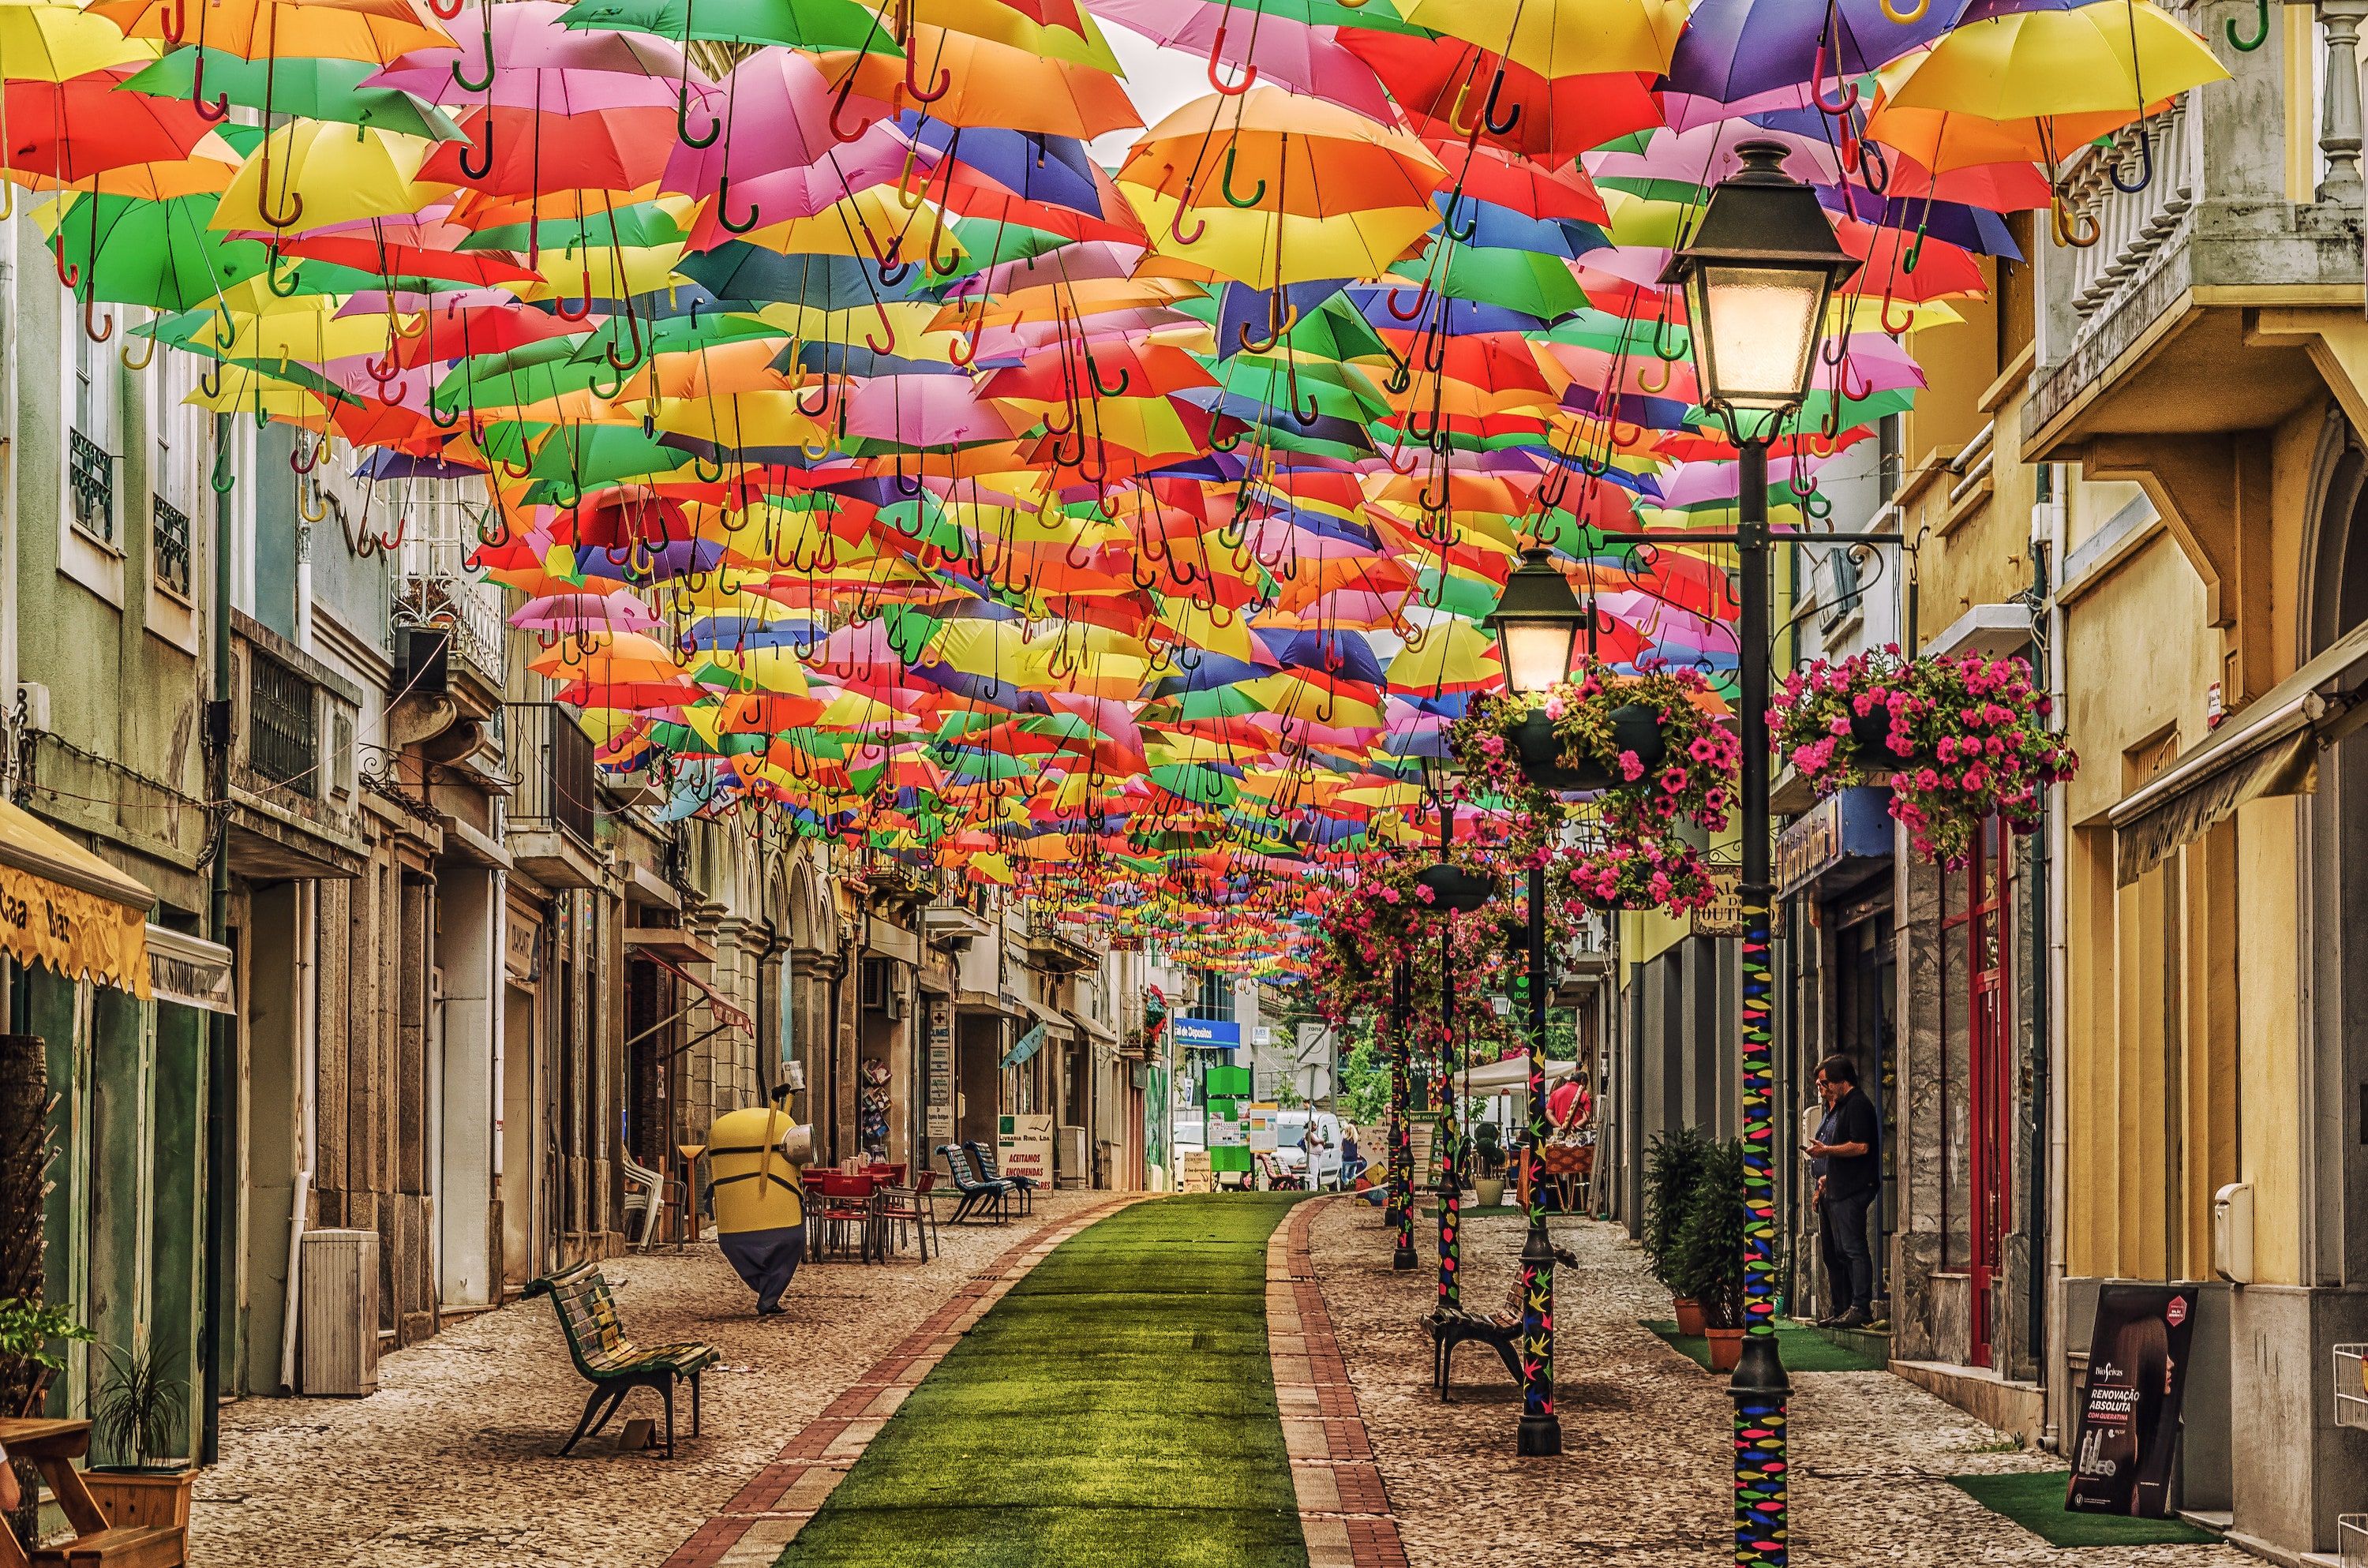 Известные улицы стран. Агеда Португалия. Аллея зонтиков в Португалии. Улица парящих зонтиков, Агеда, Португалия. Агеда Португалия достопримечательности.